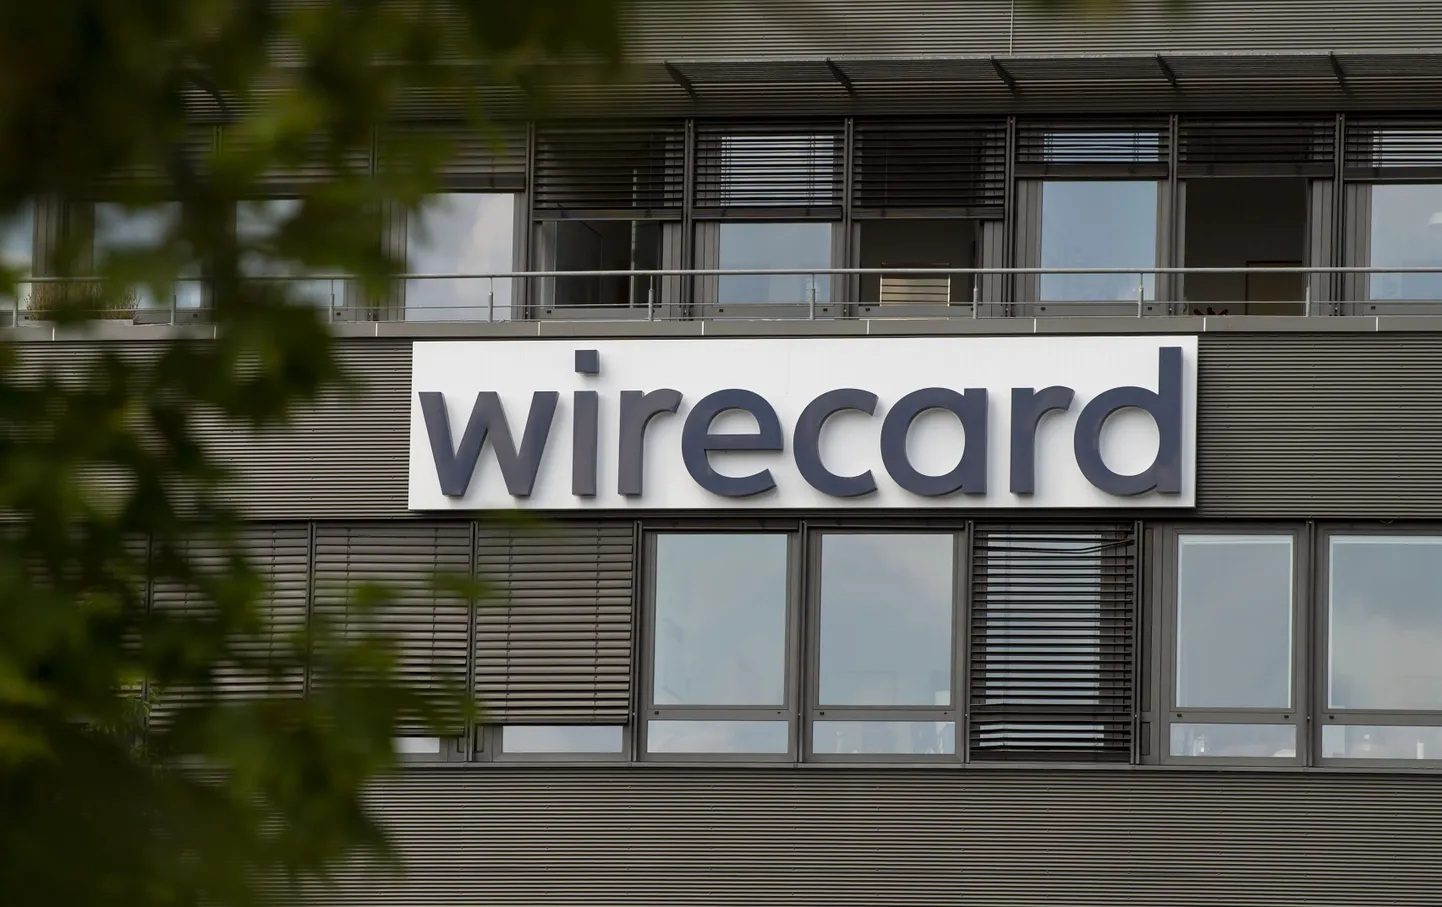 "Wirecard" ofisa ēka Vācijā